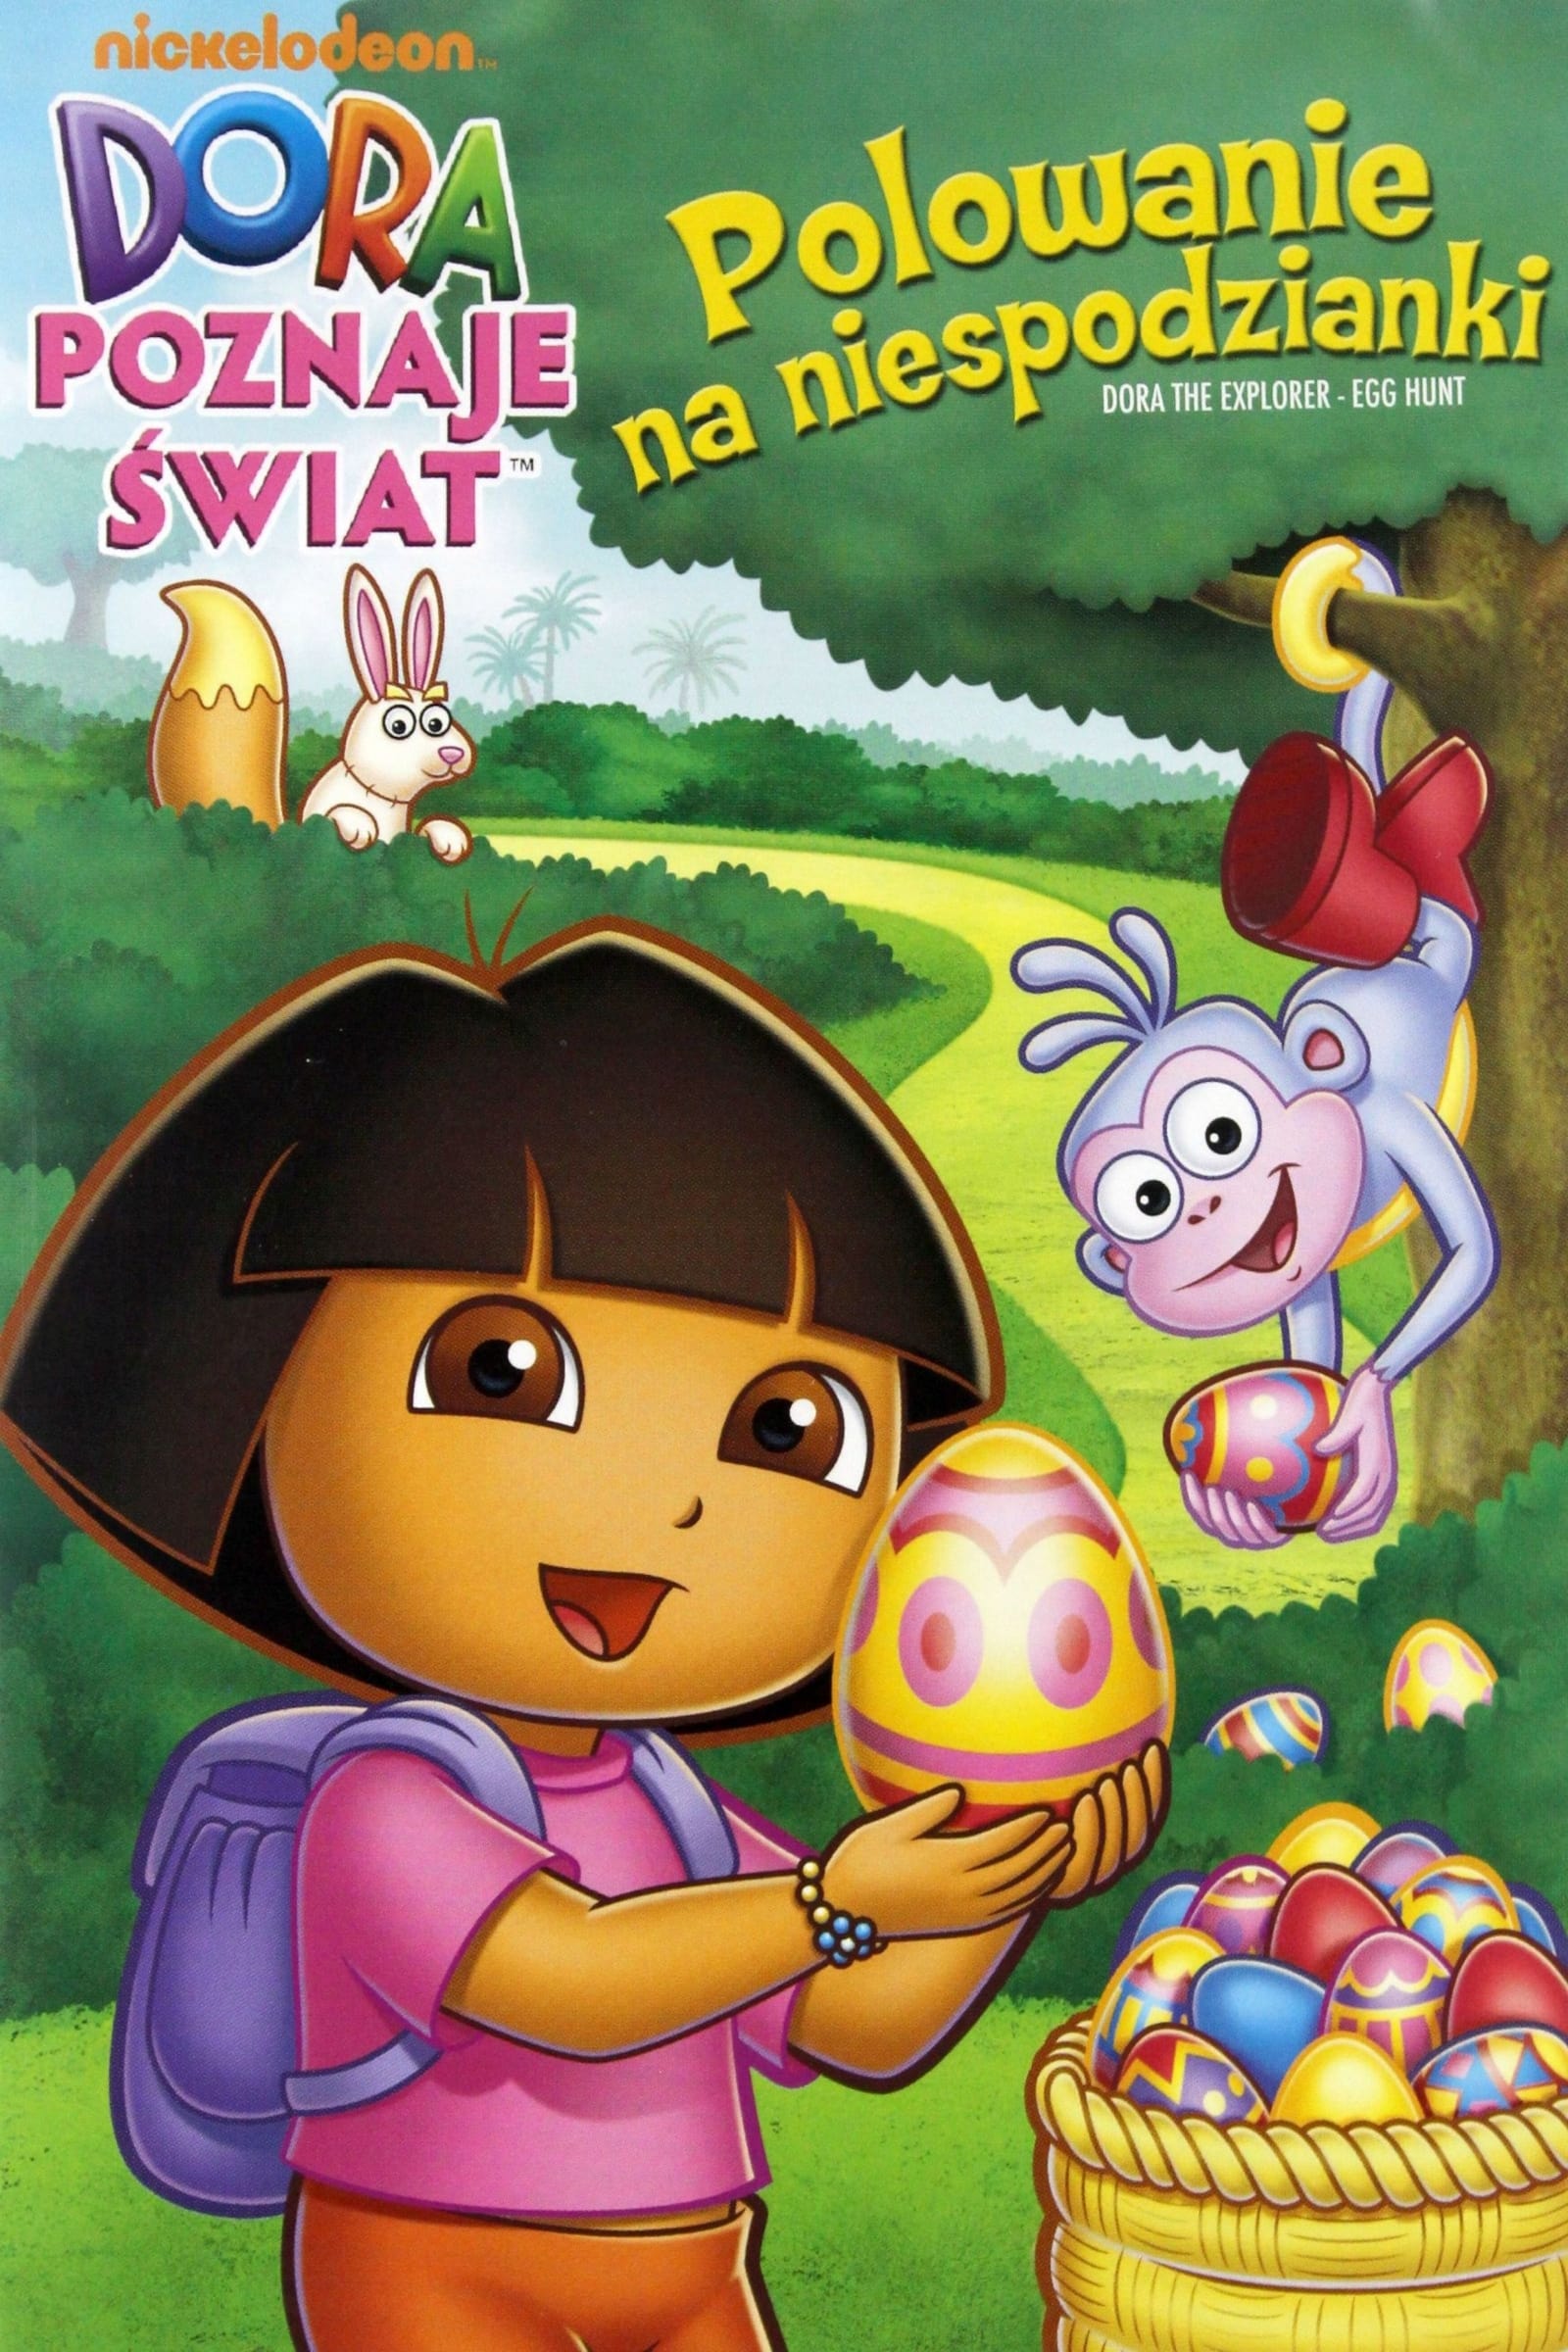 Dora the Explorer: The Egg Hunt